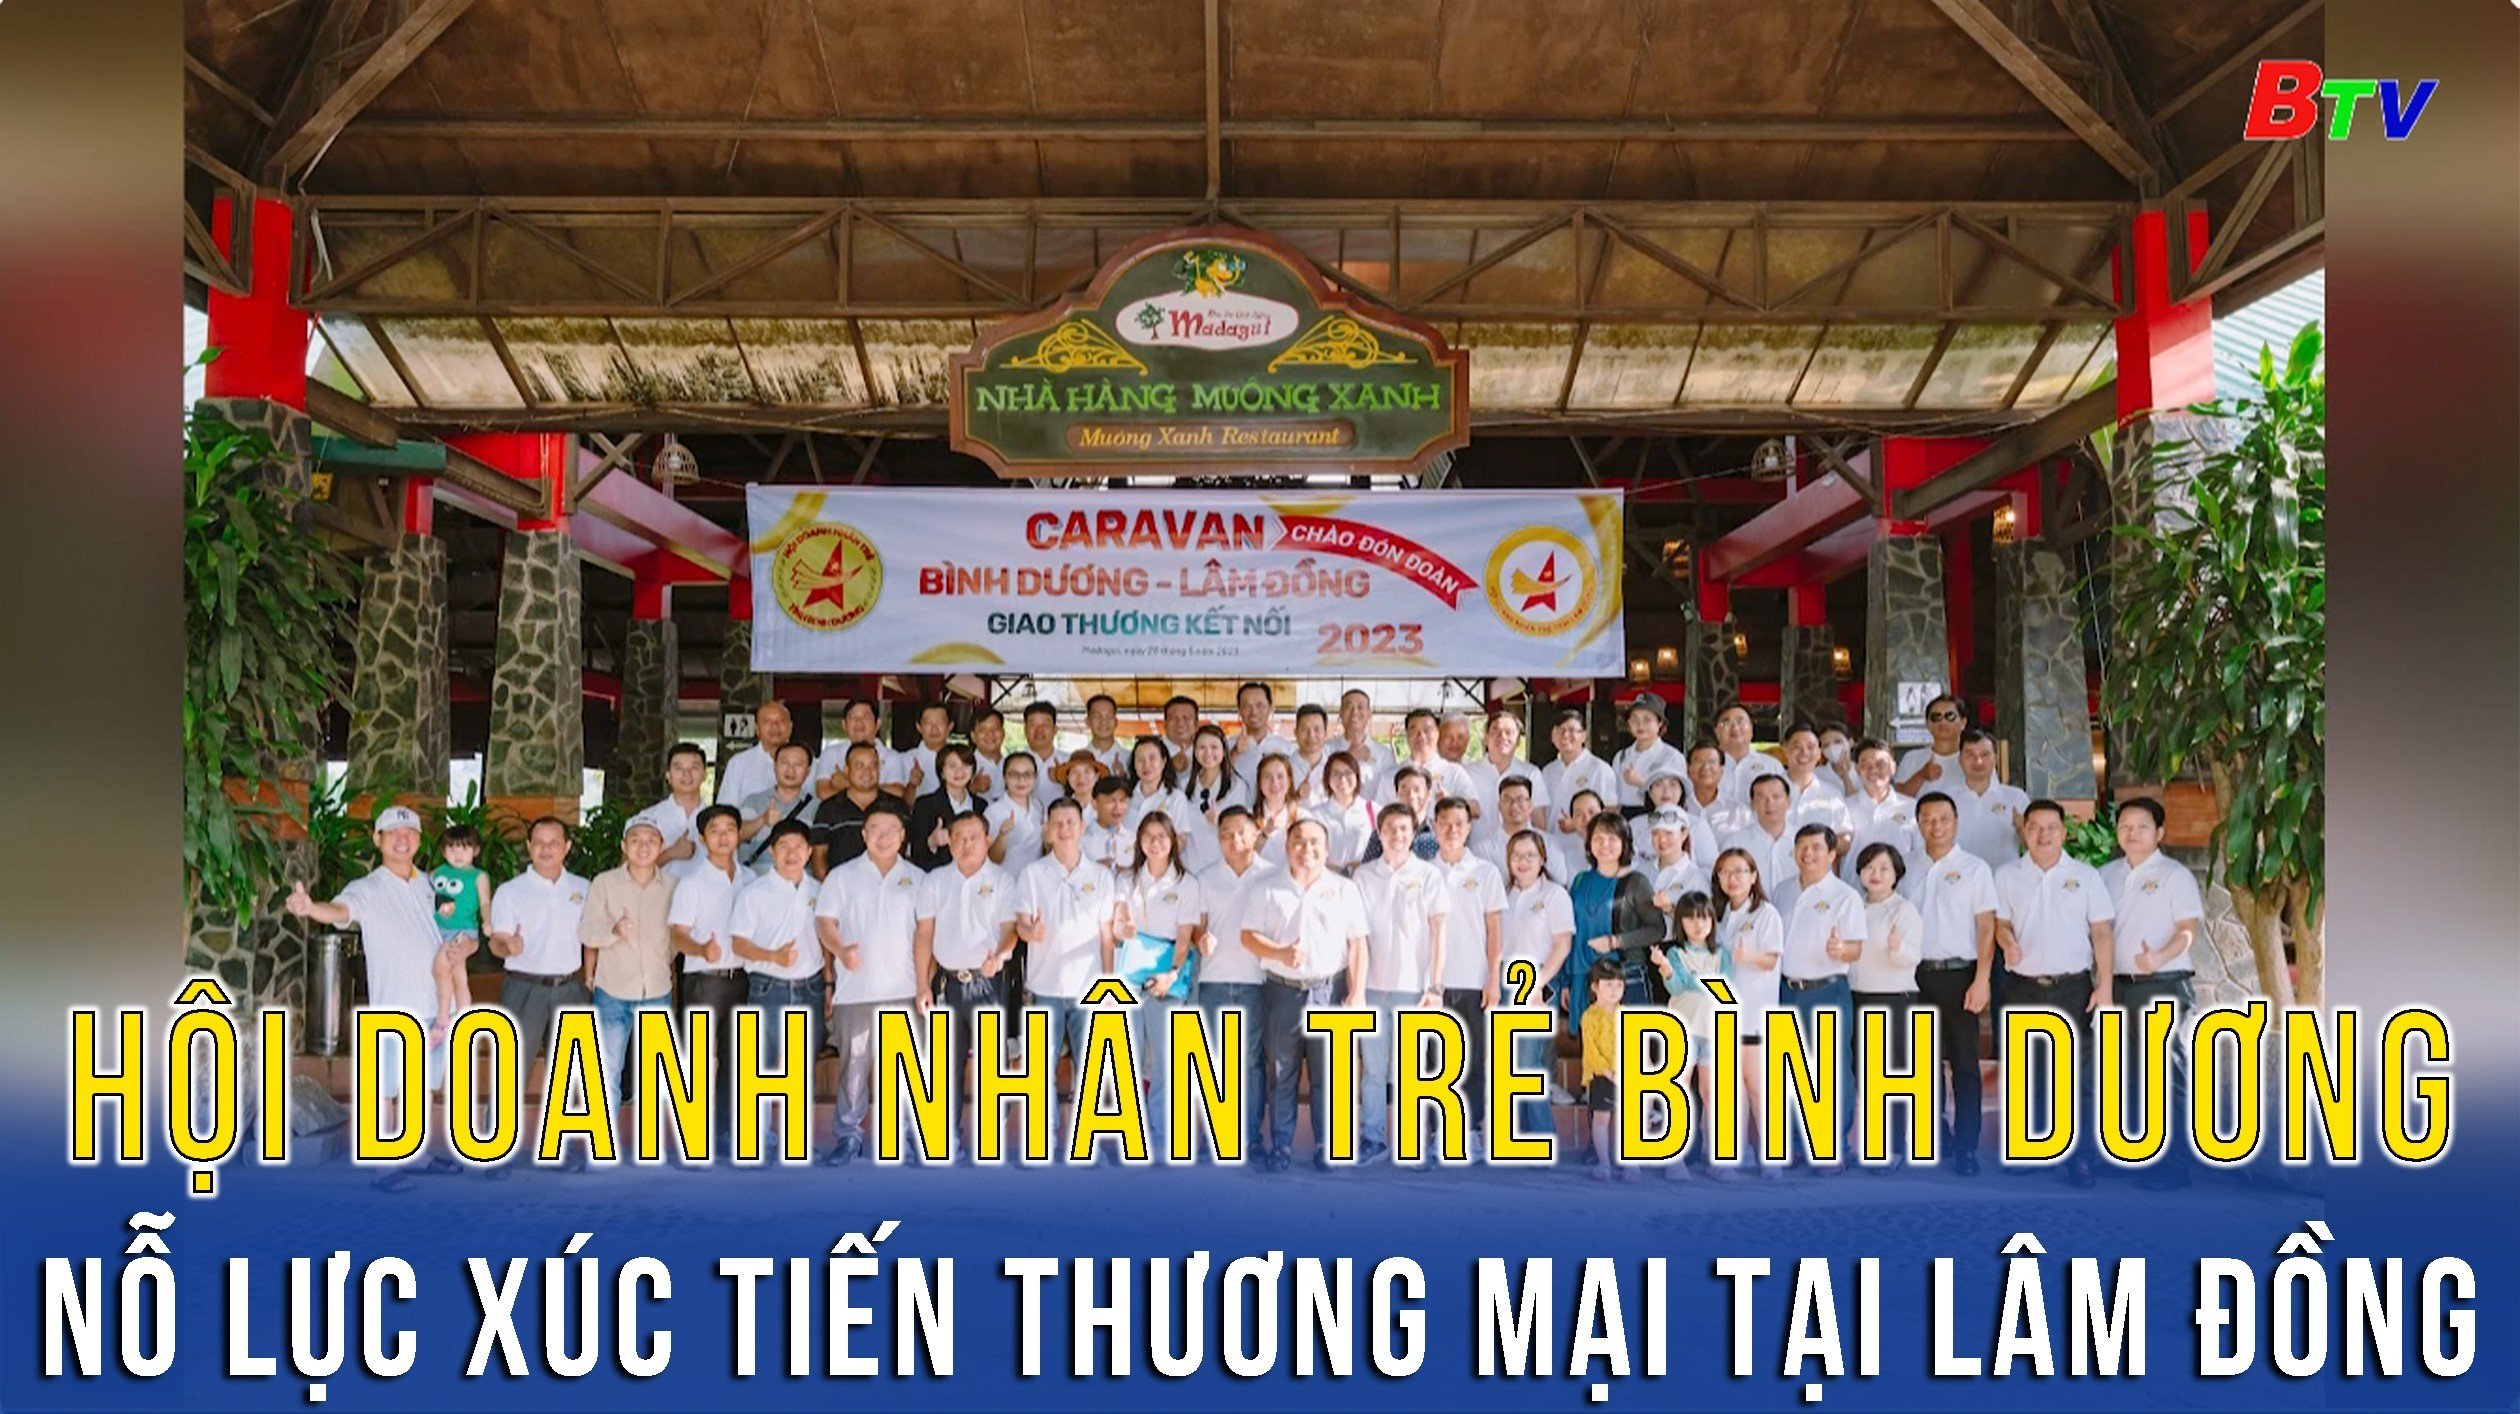 Hội doanh nhân trẻ Bình Dương - Nỗ lực xúc tiến thương mại tại Lâm Đồng